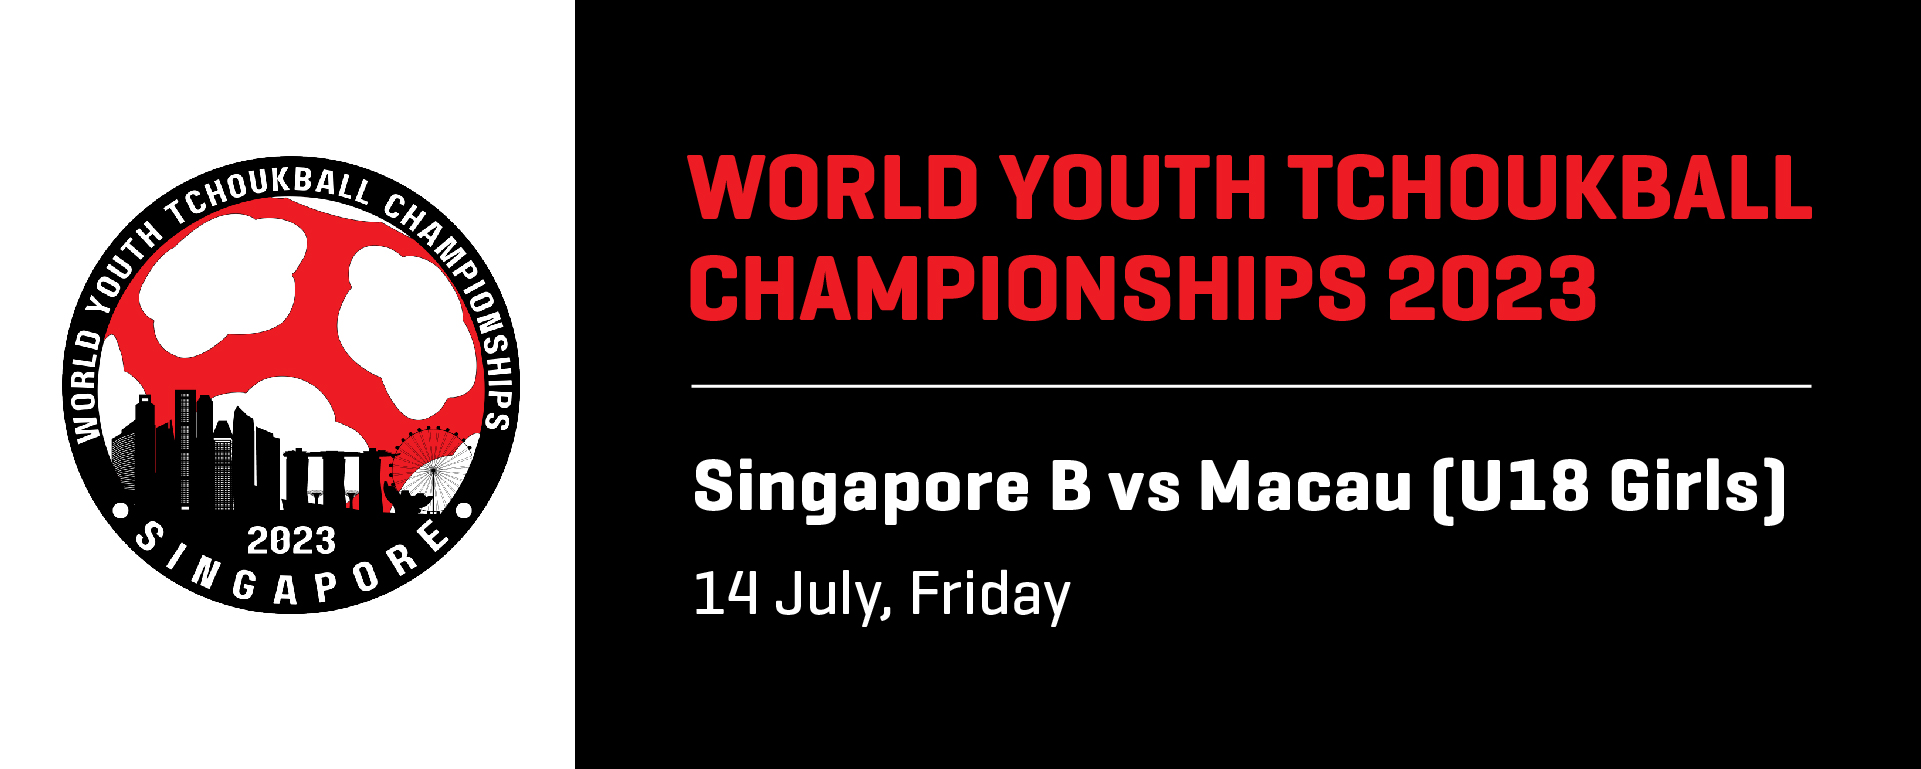 World Youth Tchoukball Championships 2023 | U18 Girls | Singapore A vs Macau